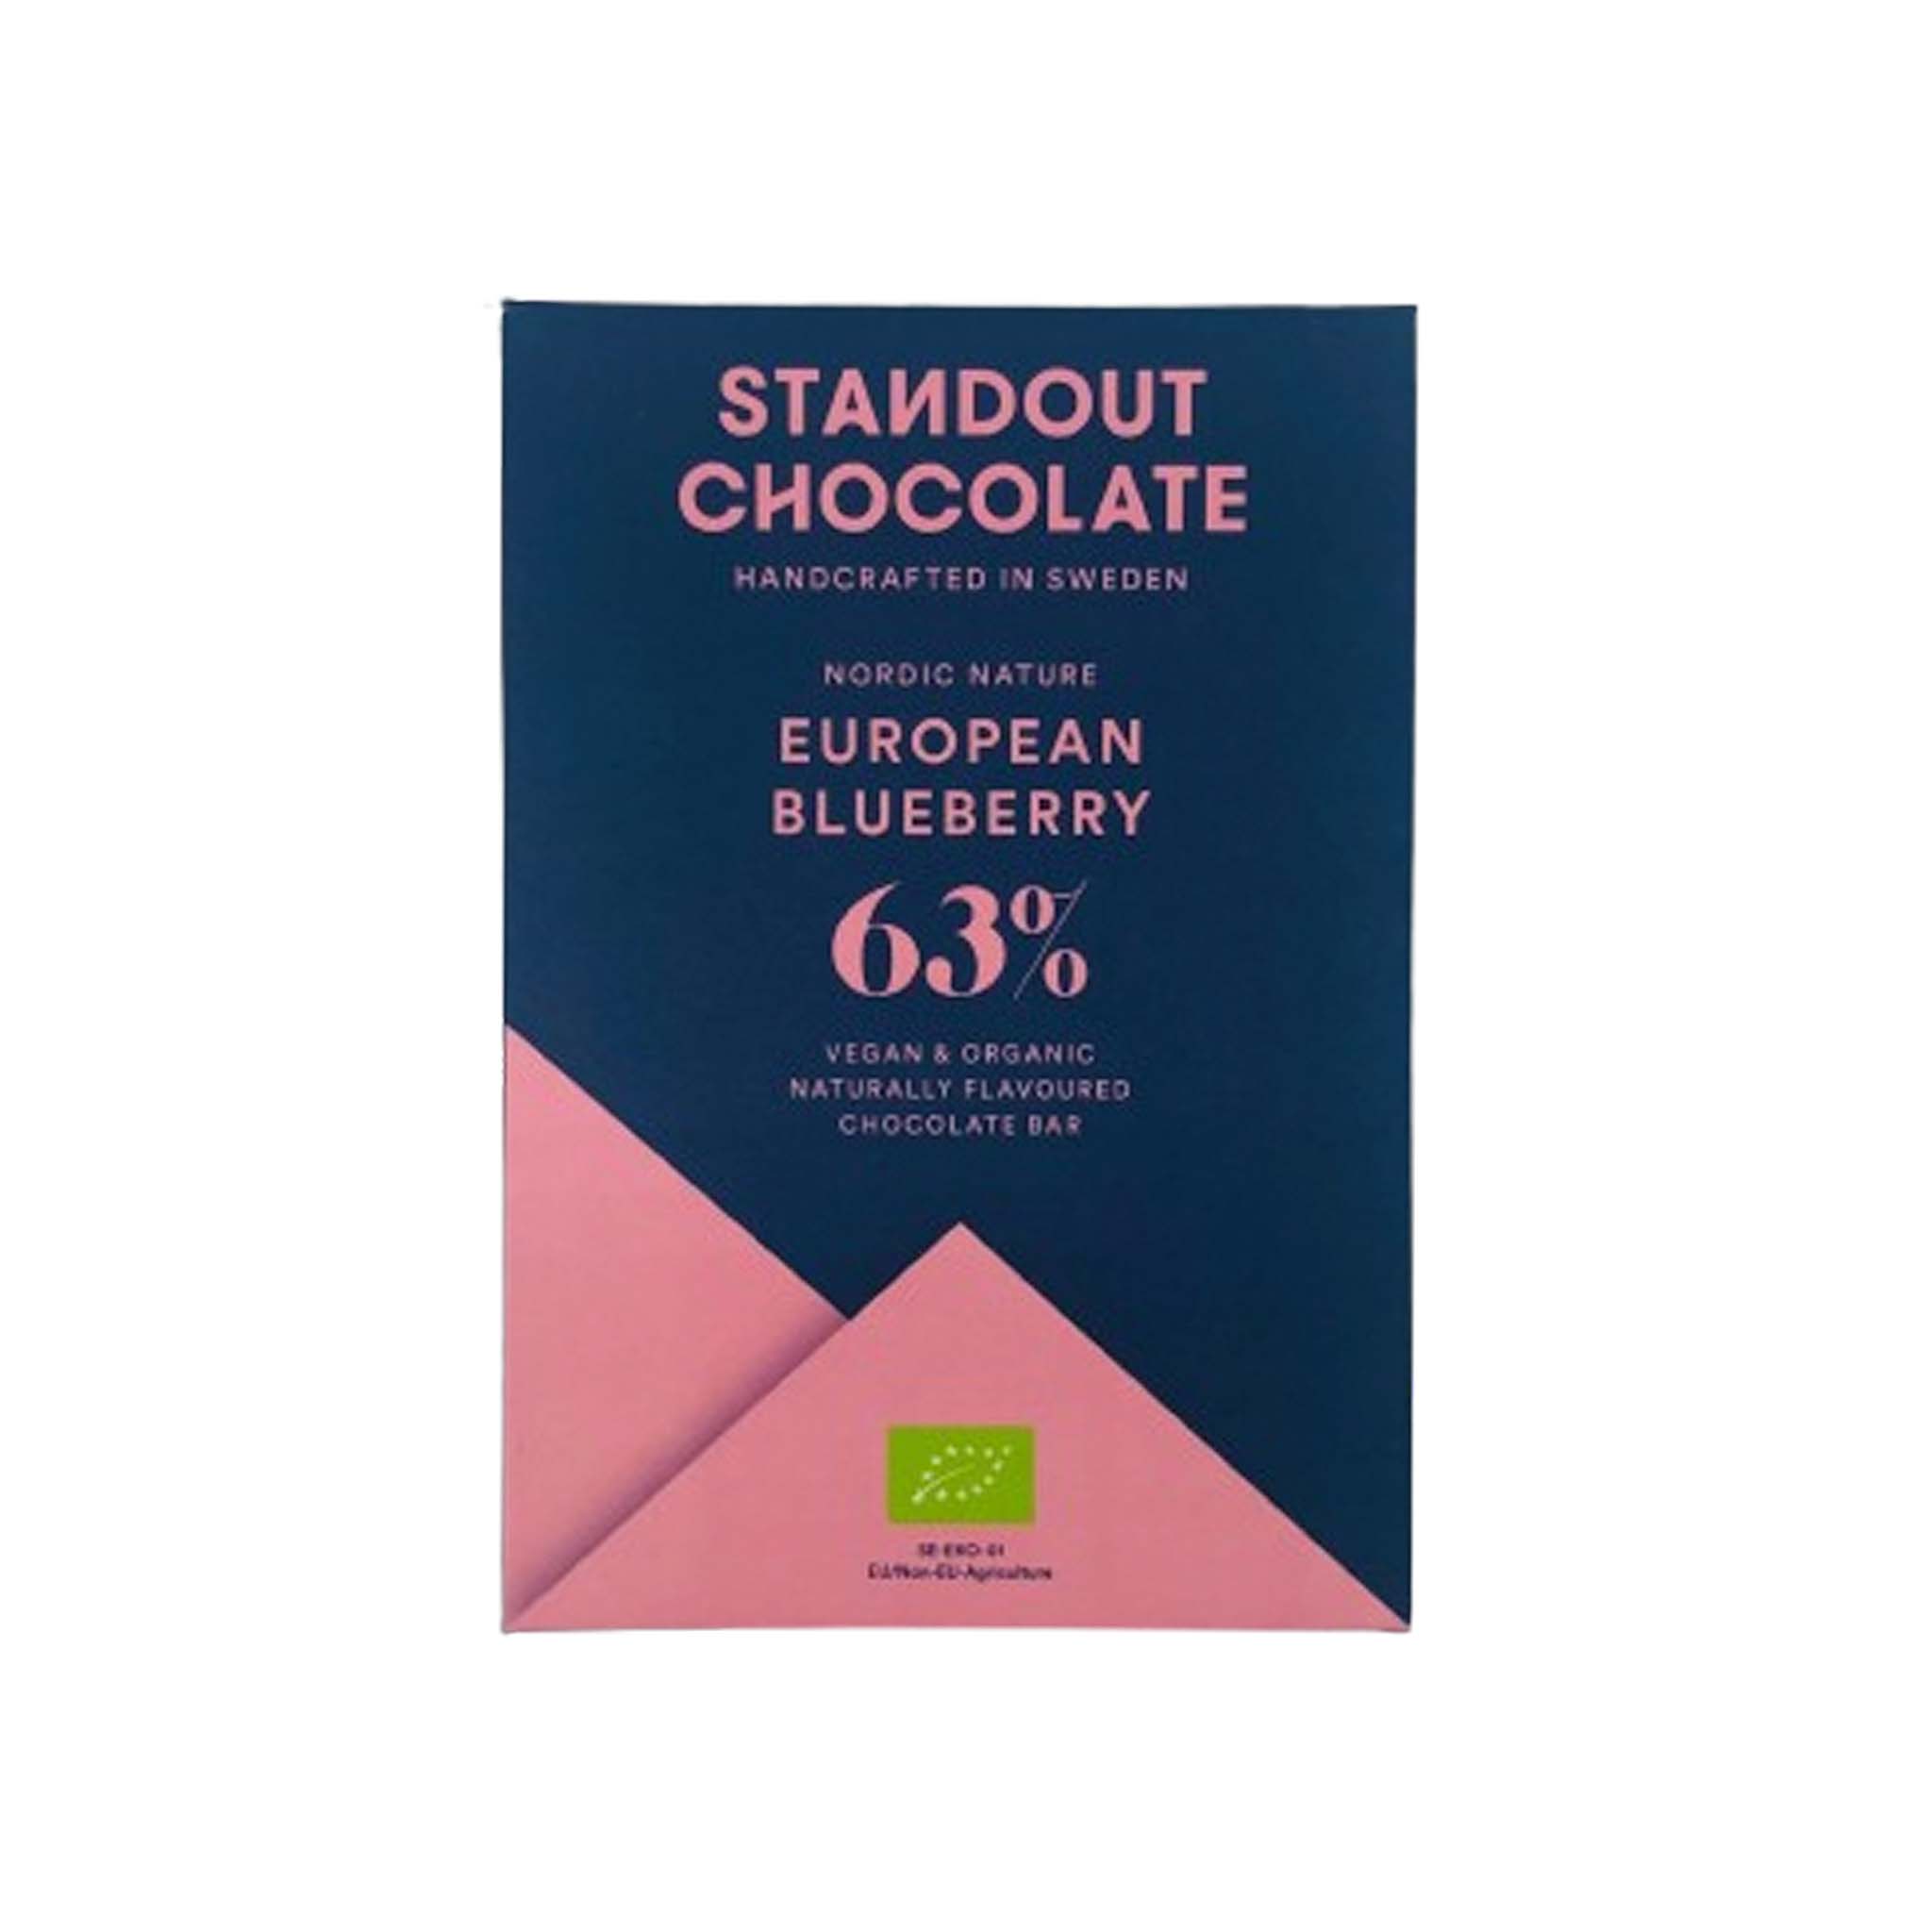 STANDOUT EUROPEAN BLUEBERRY 63% DARK CHOCOLATE 50g